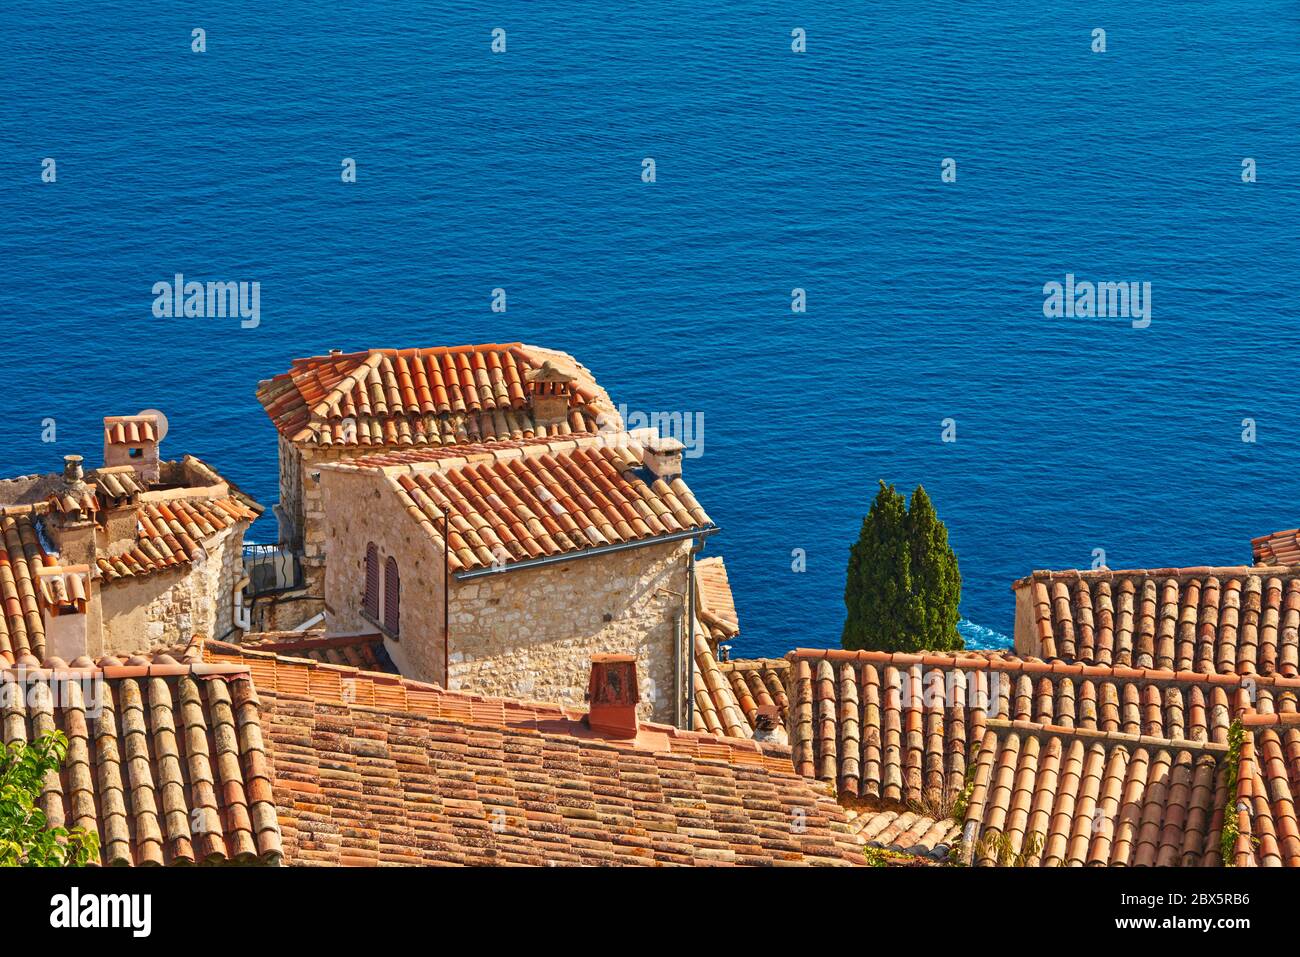 Toits en tuiles de Terra cotta et clocher du village d'Eze avec la mer Méditerranée. Côte d'Azur, Alpes-Maritimes (06), France Banque D'Images